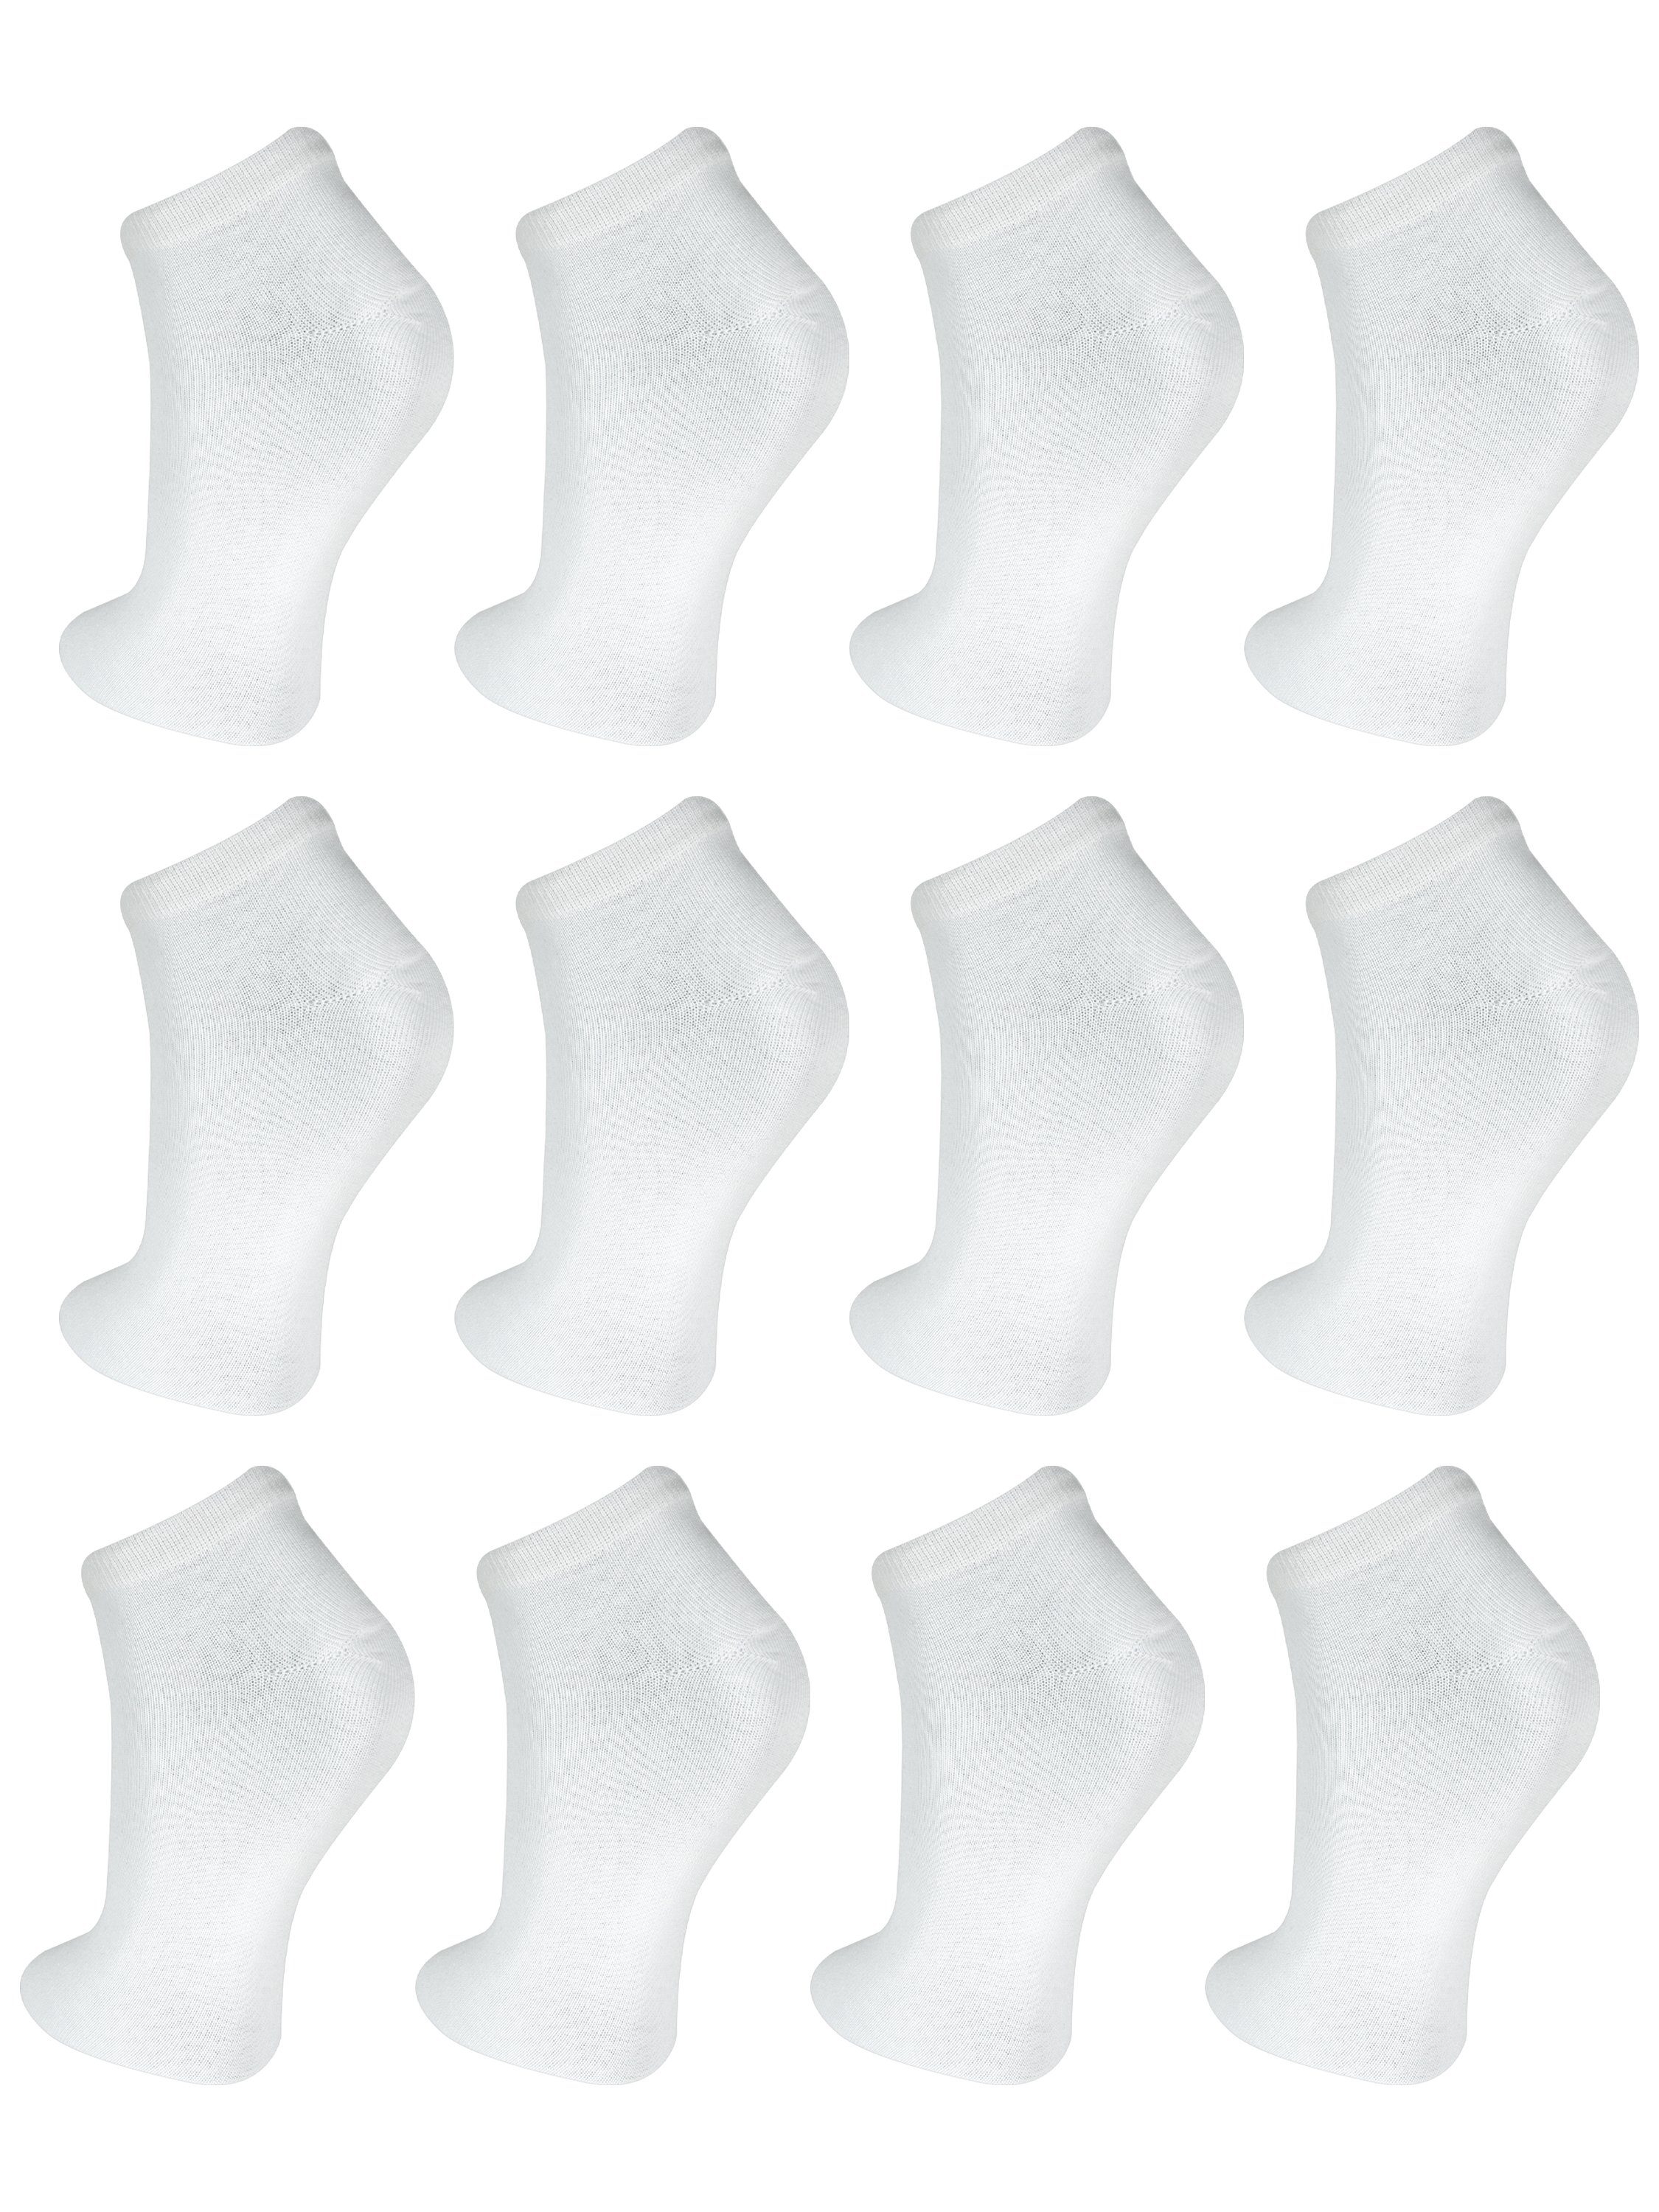 Sneaker Weiß bis Damen (12-Paar) Paar Kurzsocken 60 12 Freizeit Baumwolle Socken TEXEMP Herren Strapazierfähig